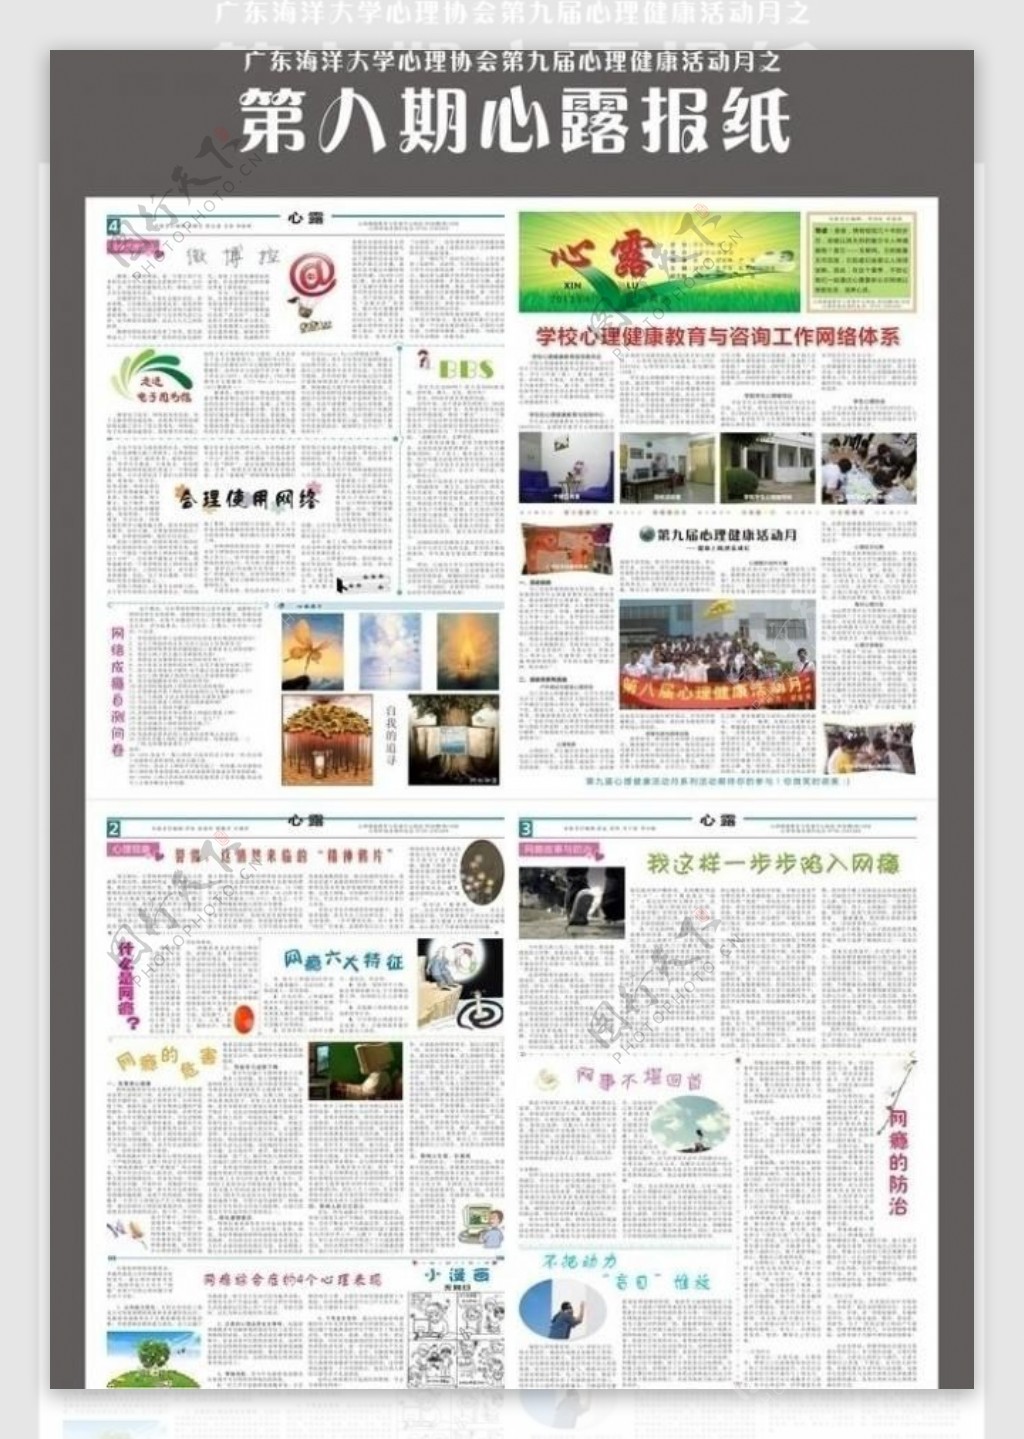 广东海洋大学心理协会第八期心露报纸主题健康上网快乐成长图片